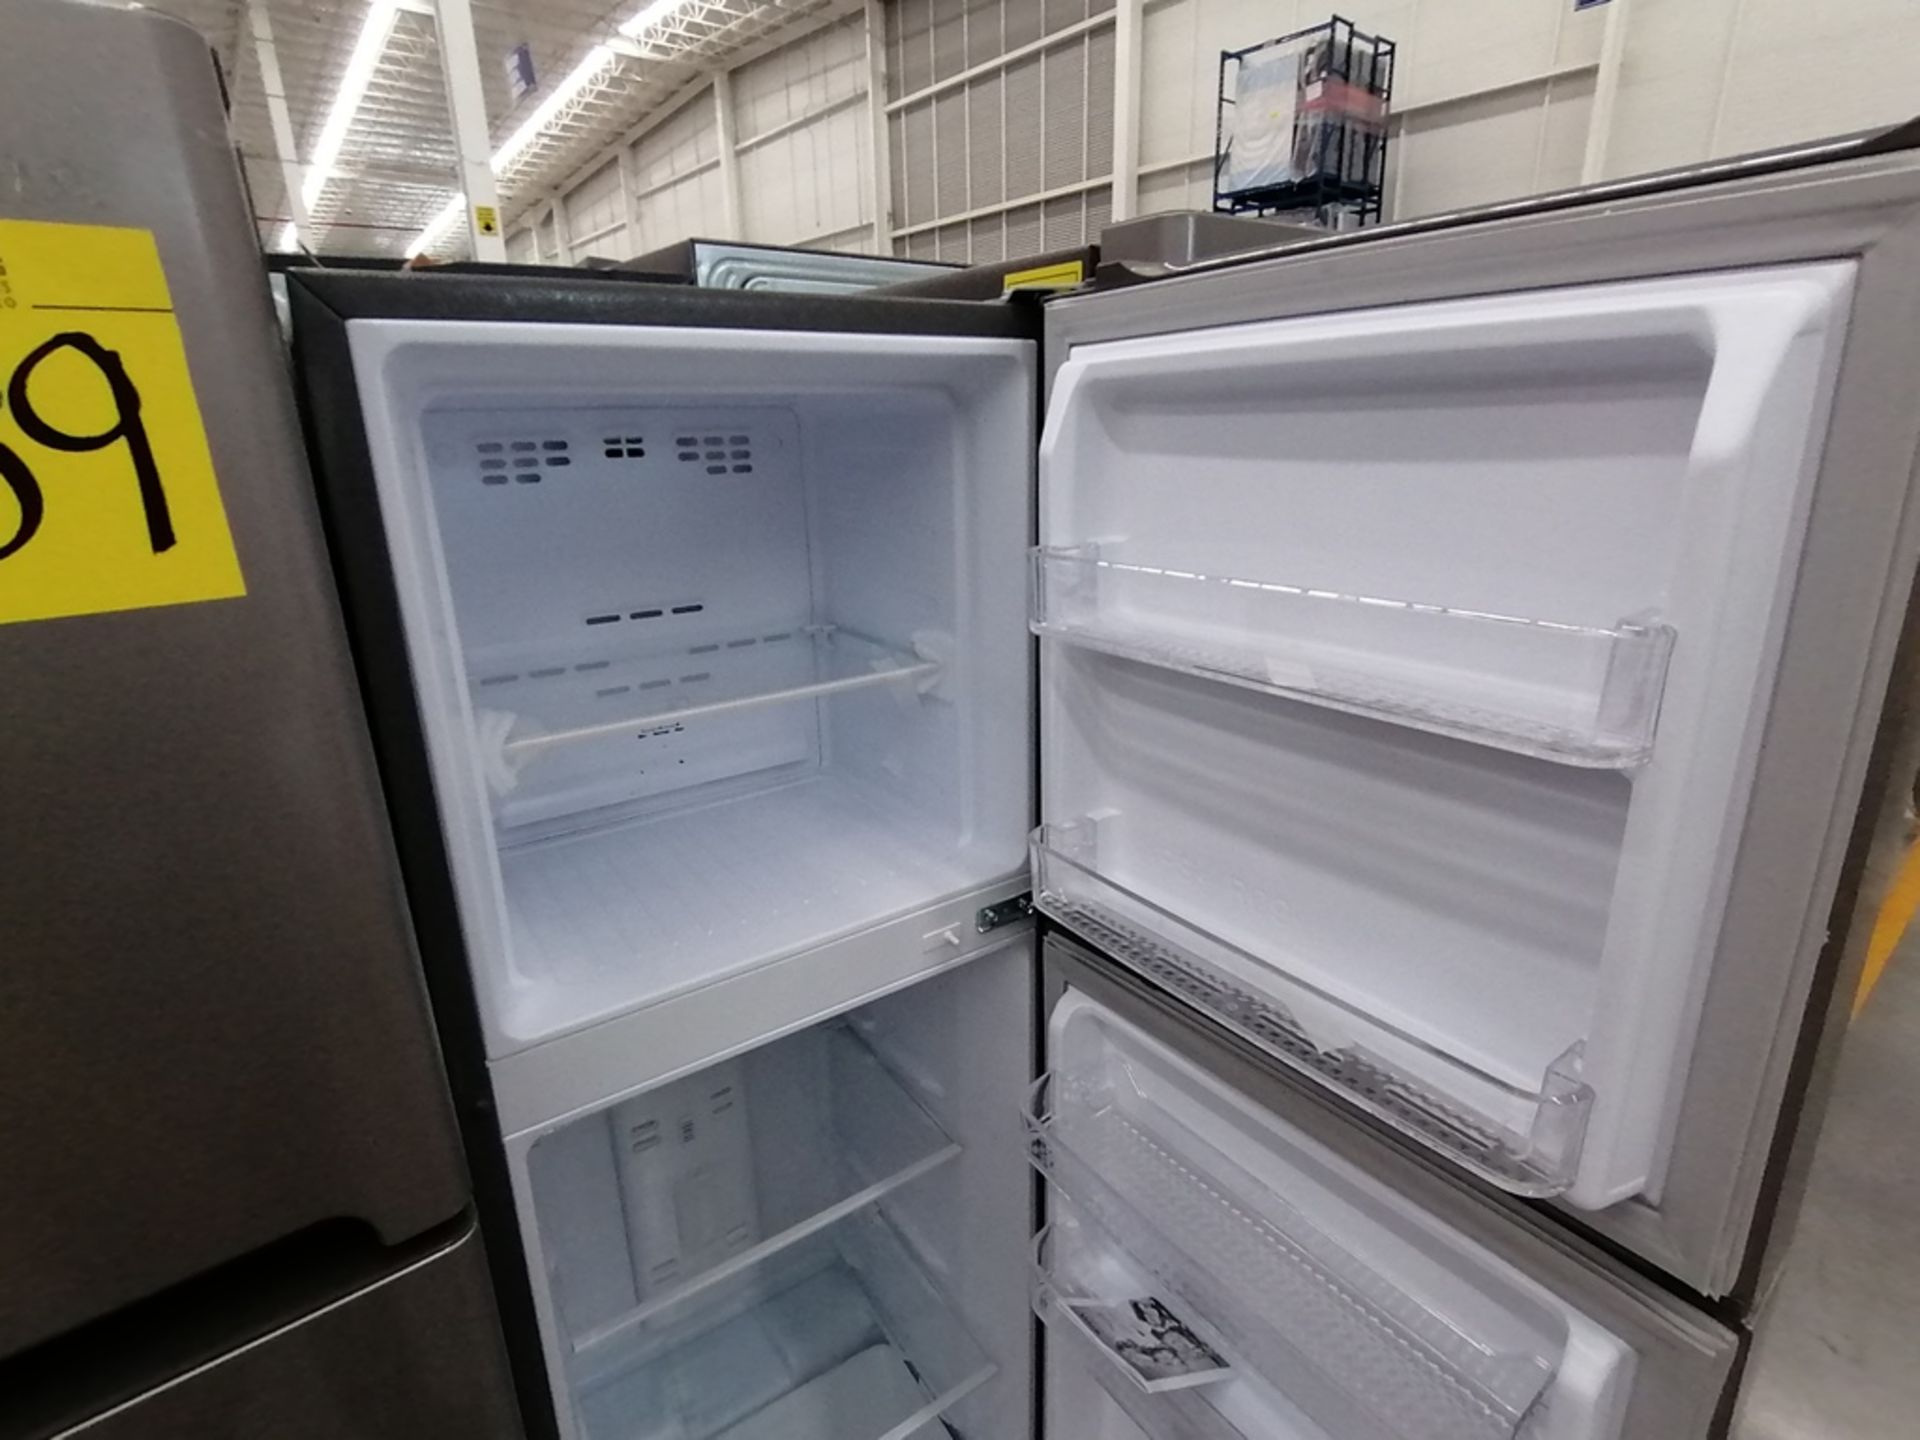 Lote de 2 refrigeradores incluye: 1 Refrigerador, Marca Winia, Modelo DFR25210GN, Serie MR219N11602 - Image 13 of 15